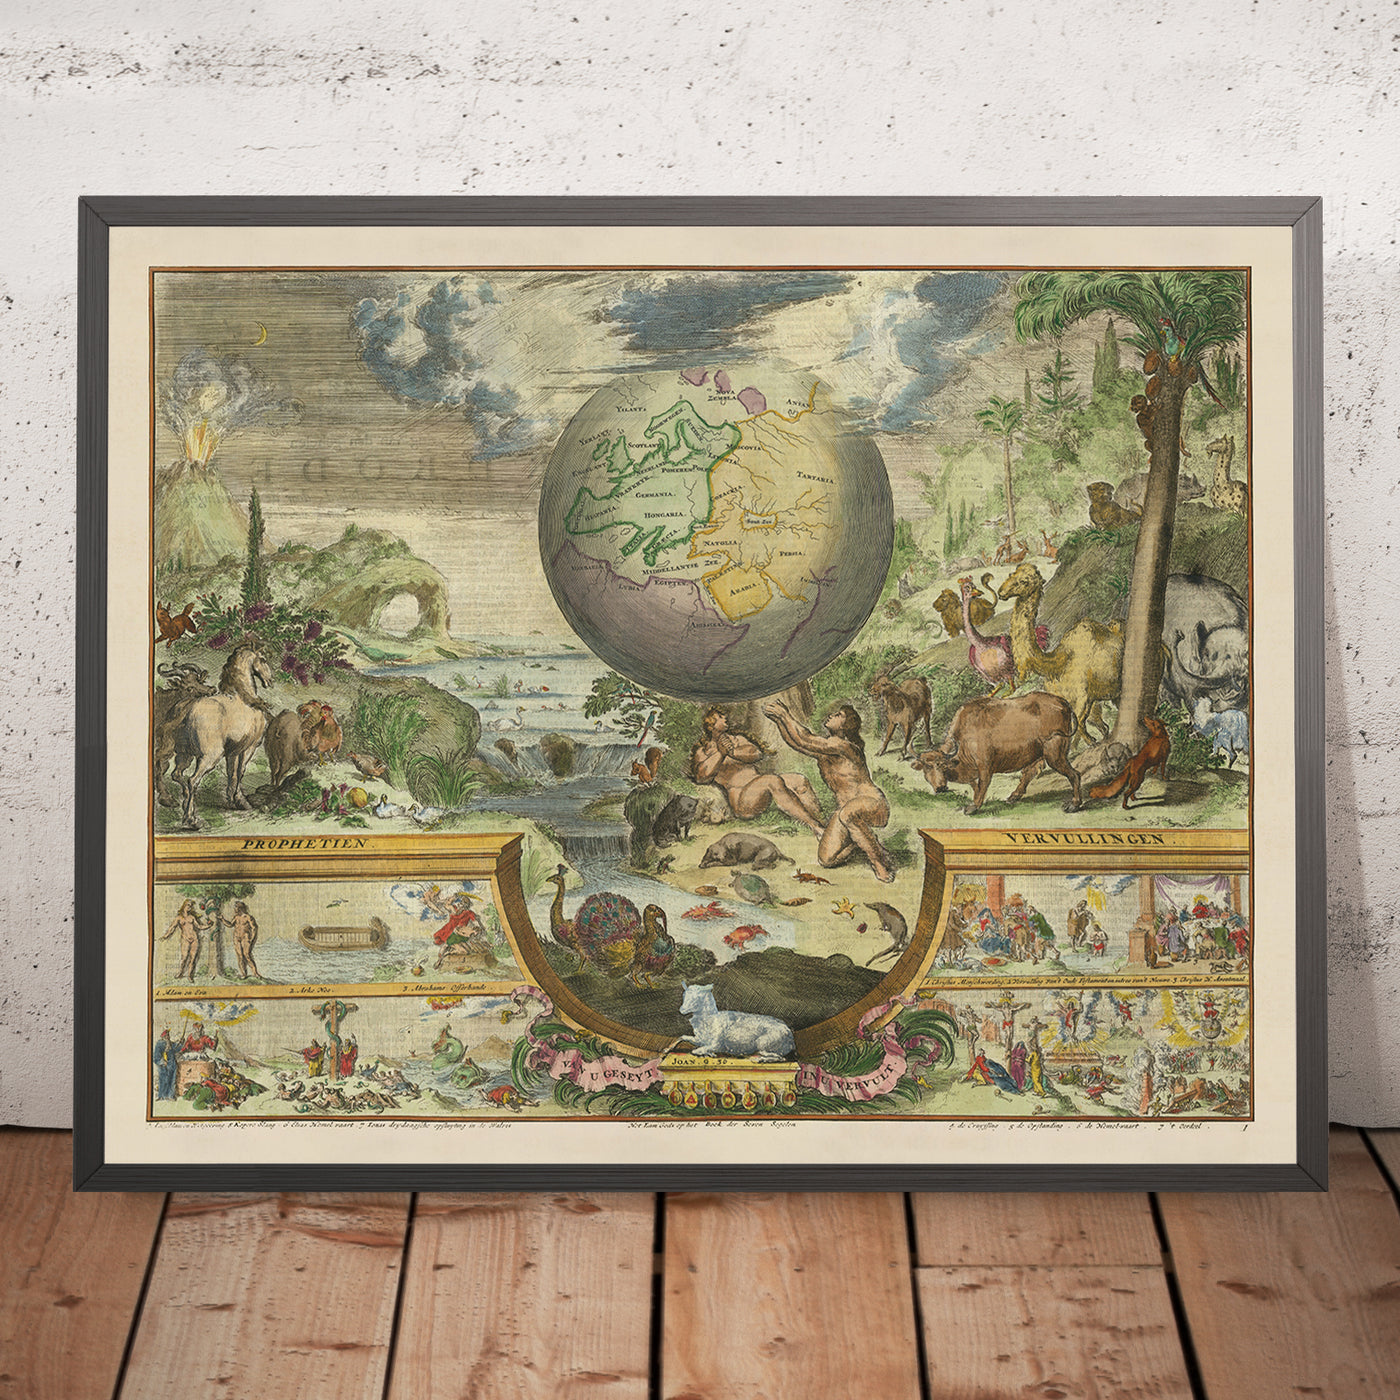 Old Garden of Eden World Map, 1687: Romeyn De Hooghe's Illustration of Paradise